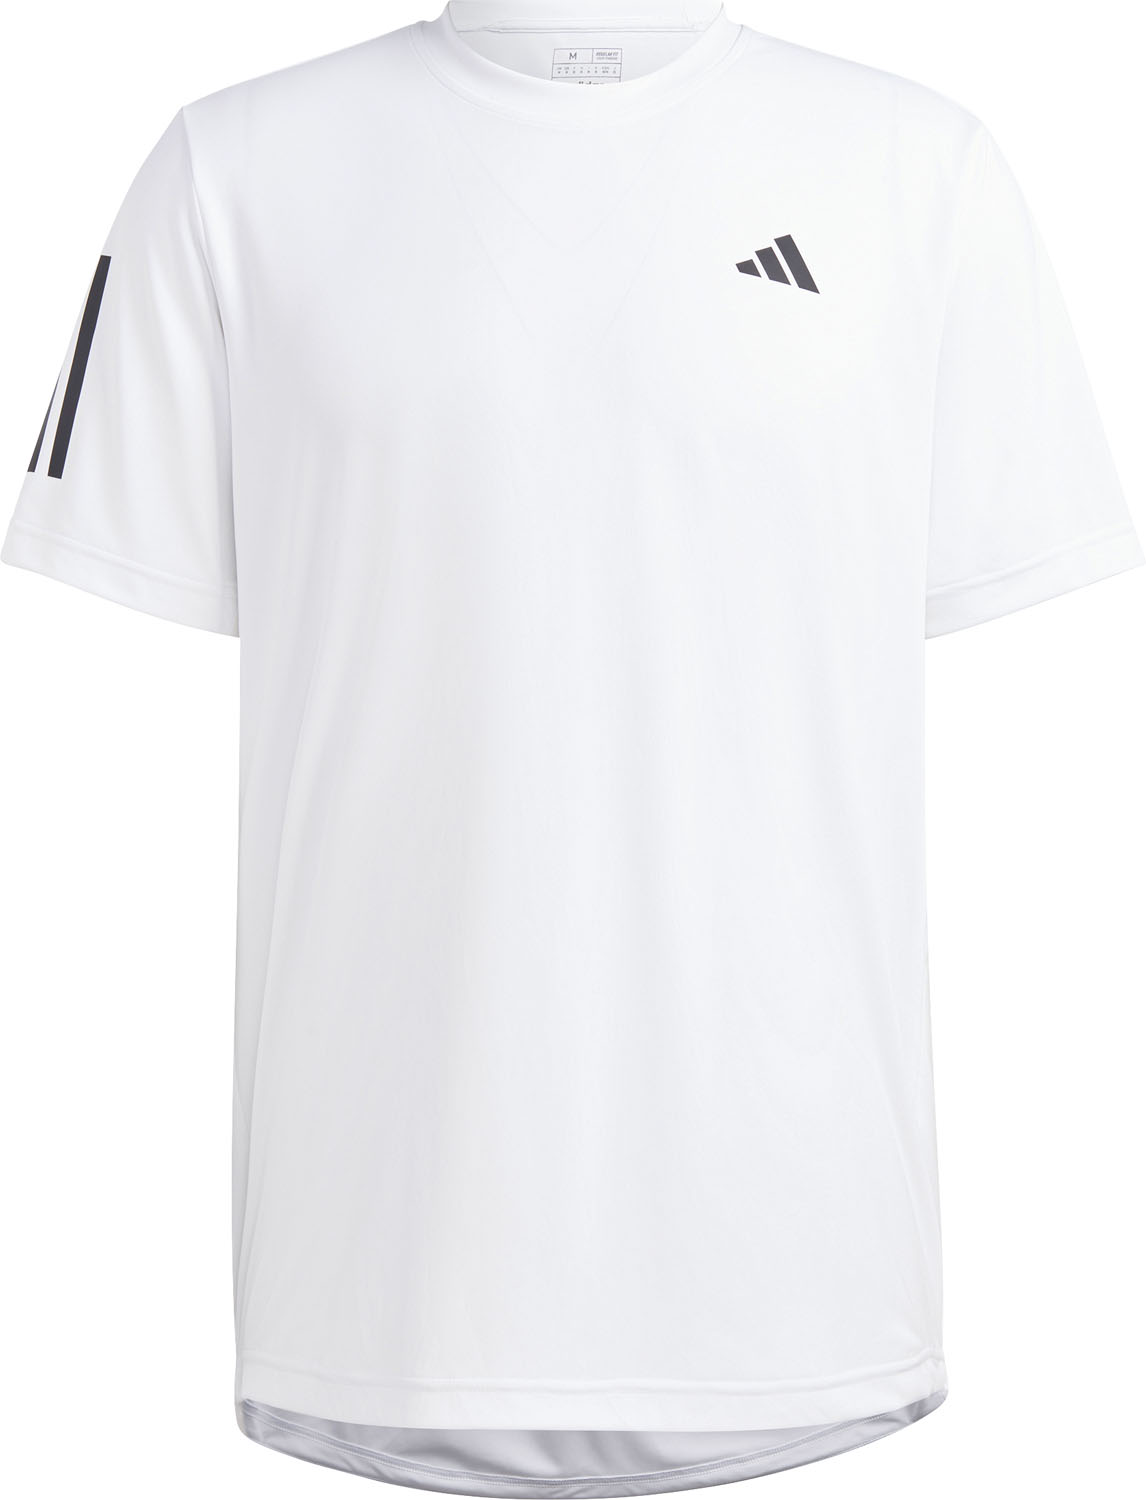 【5日まで全品3%OFFクーポン&ポイントアップ】 adidas アディダス テニス クラブ スリーストライプス テニス 半袖Tシャツ MLE72 HS3261